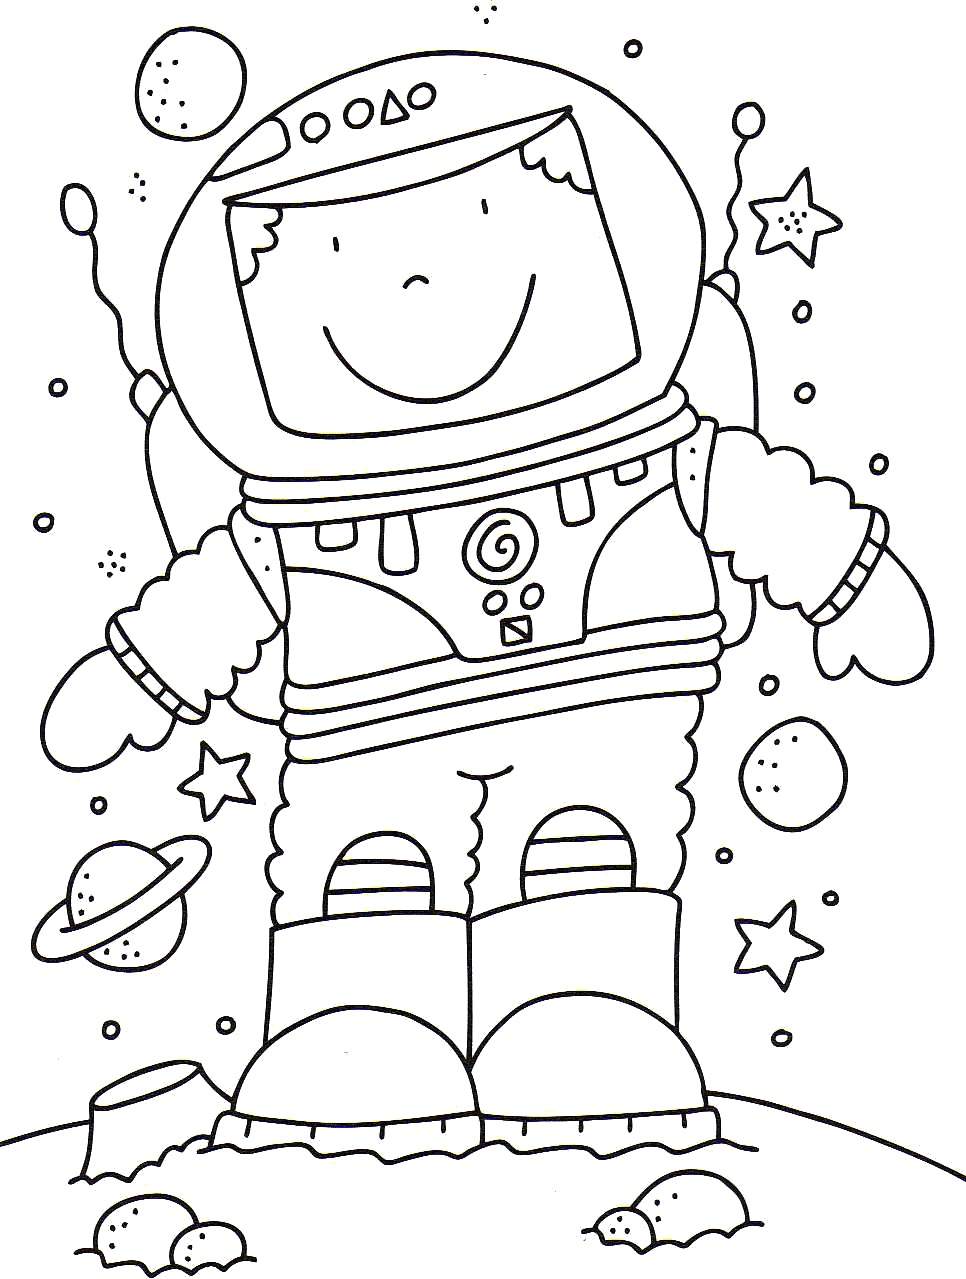 Трафареты ко дню космонавтики. Космос раскраска для детей. Раскраска. В космосе. Космические раскраски для детей. Детские раскраски космос.